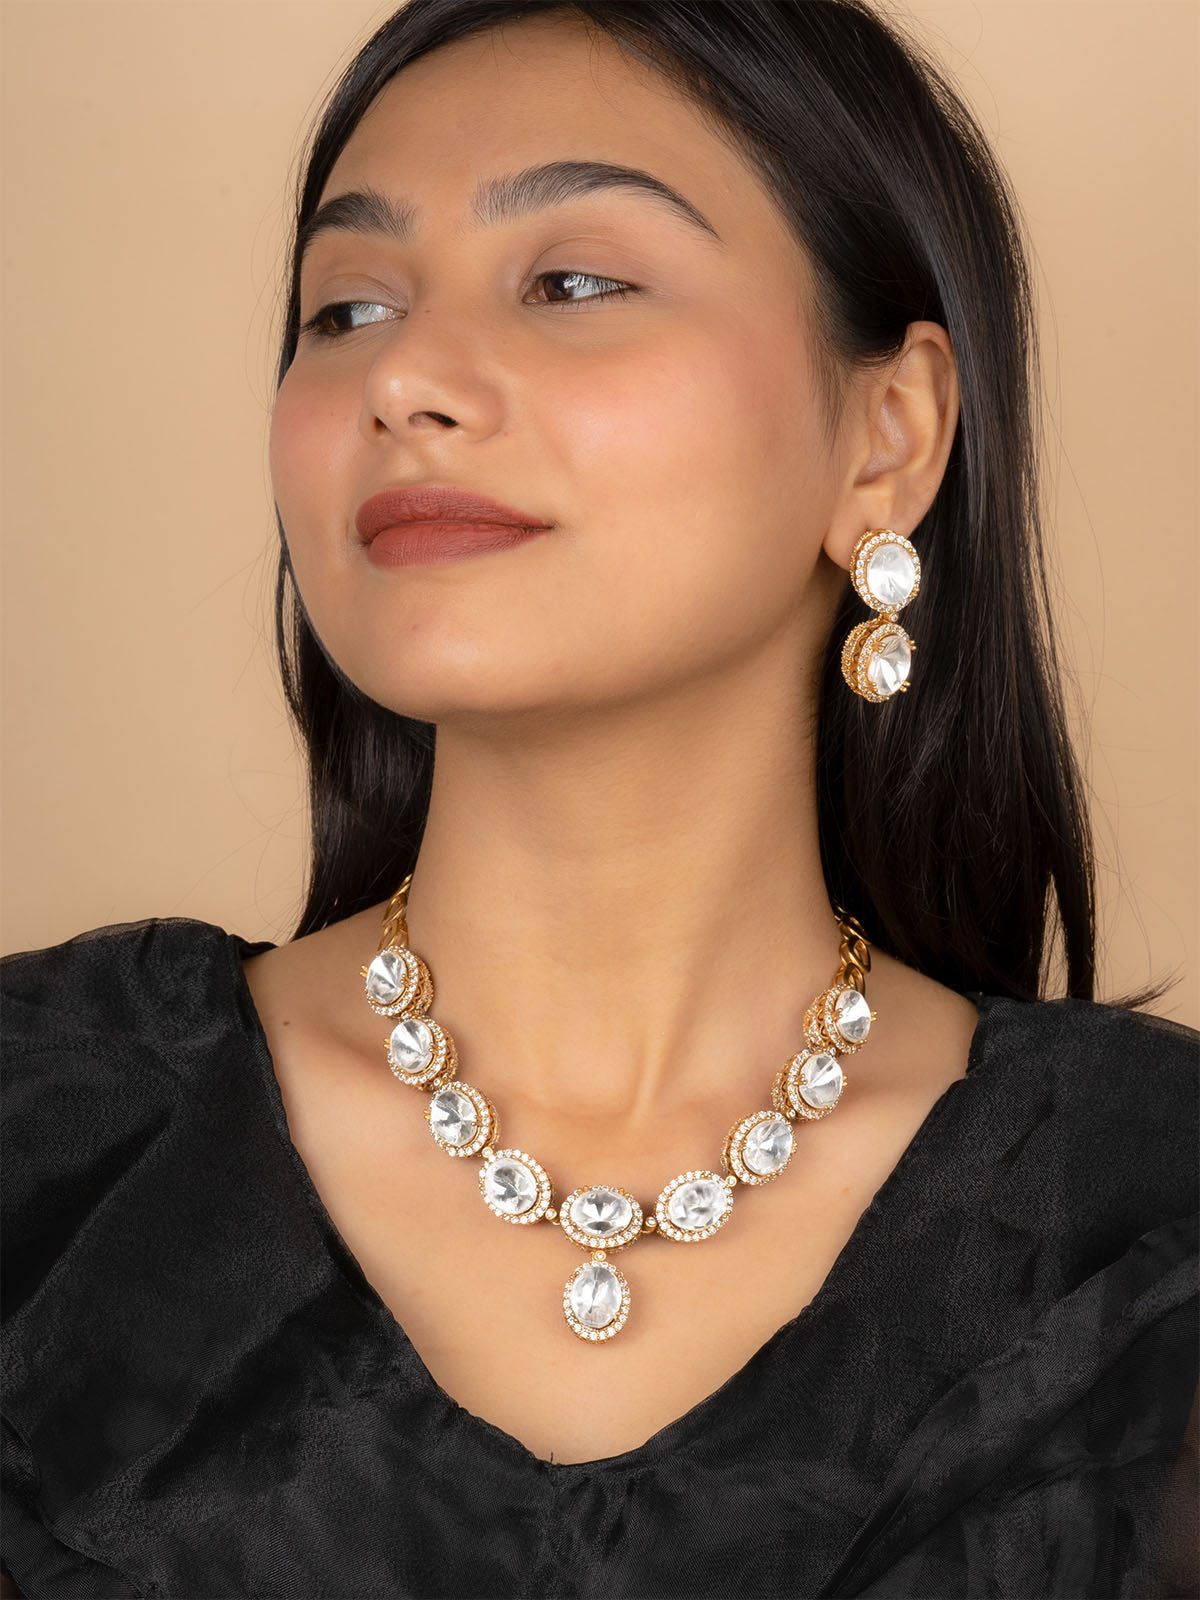 PK-S127 - White Color Faux Diamond Short Necklace Set